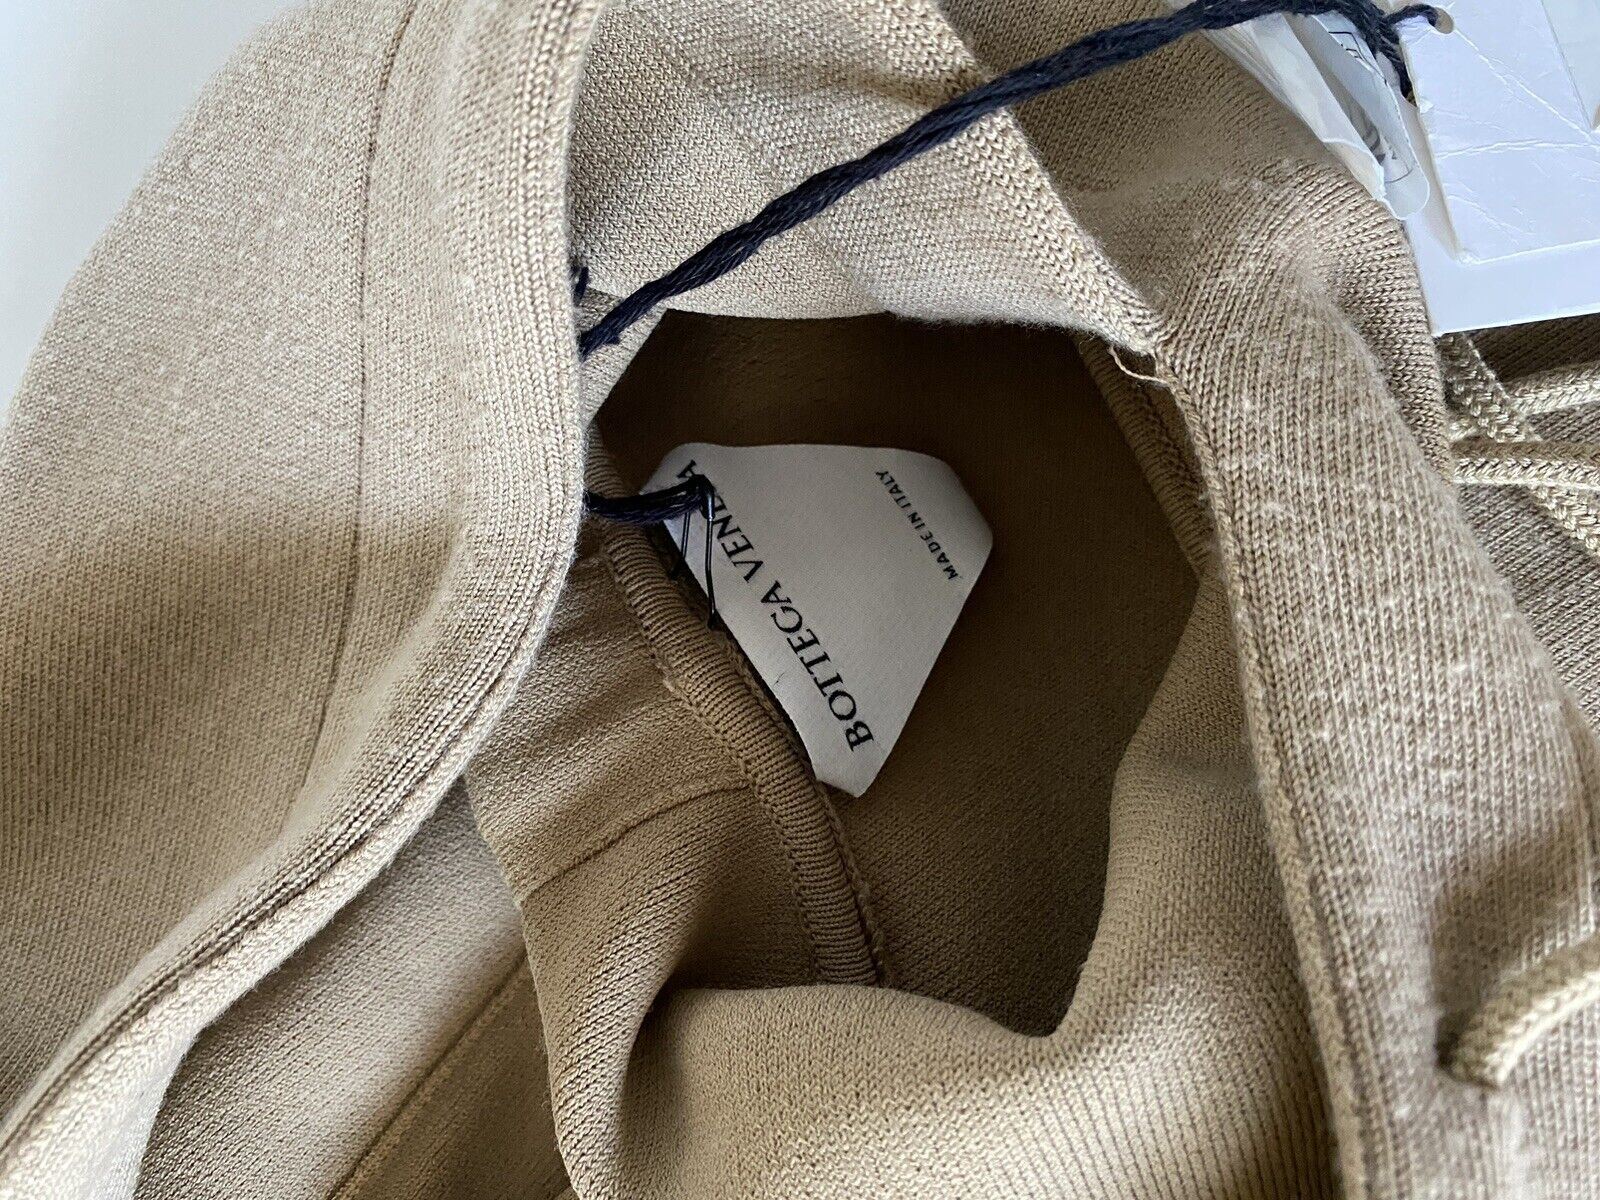 NWT $1750 Женская худи с капюшоном Bottega Veneta, шерстяной свитер, бежевый, маленький размер 647529 Италия 